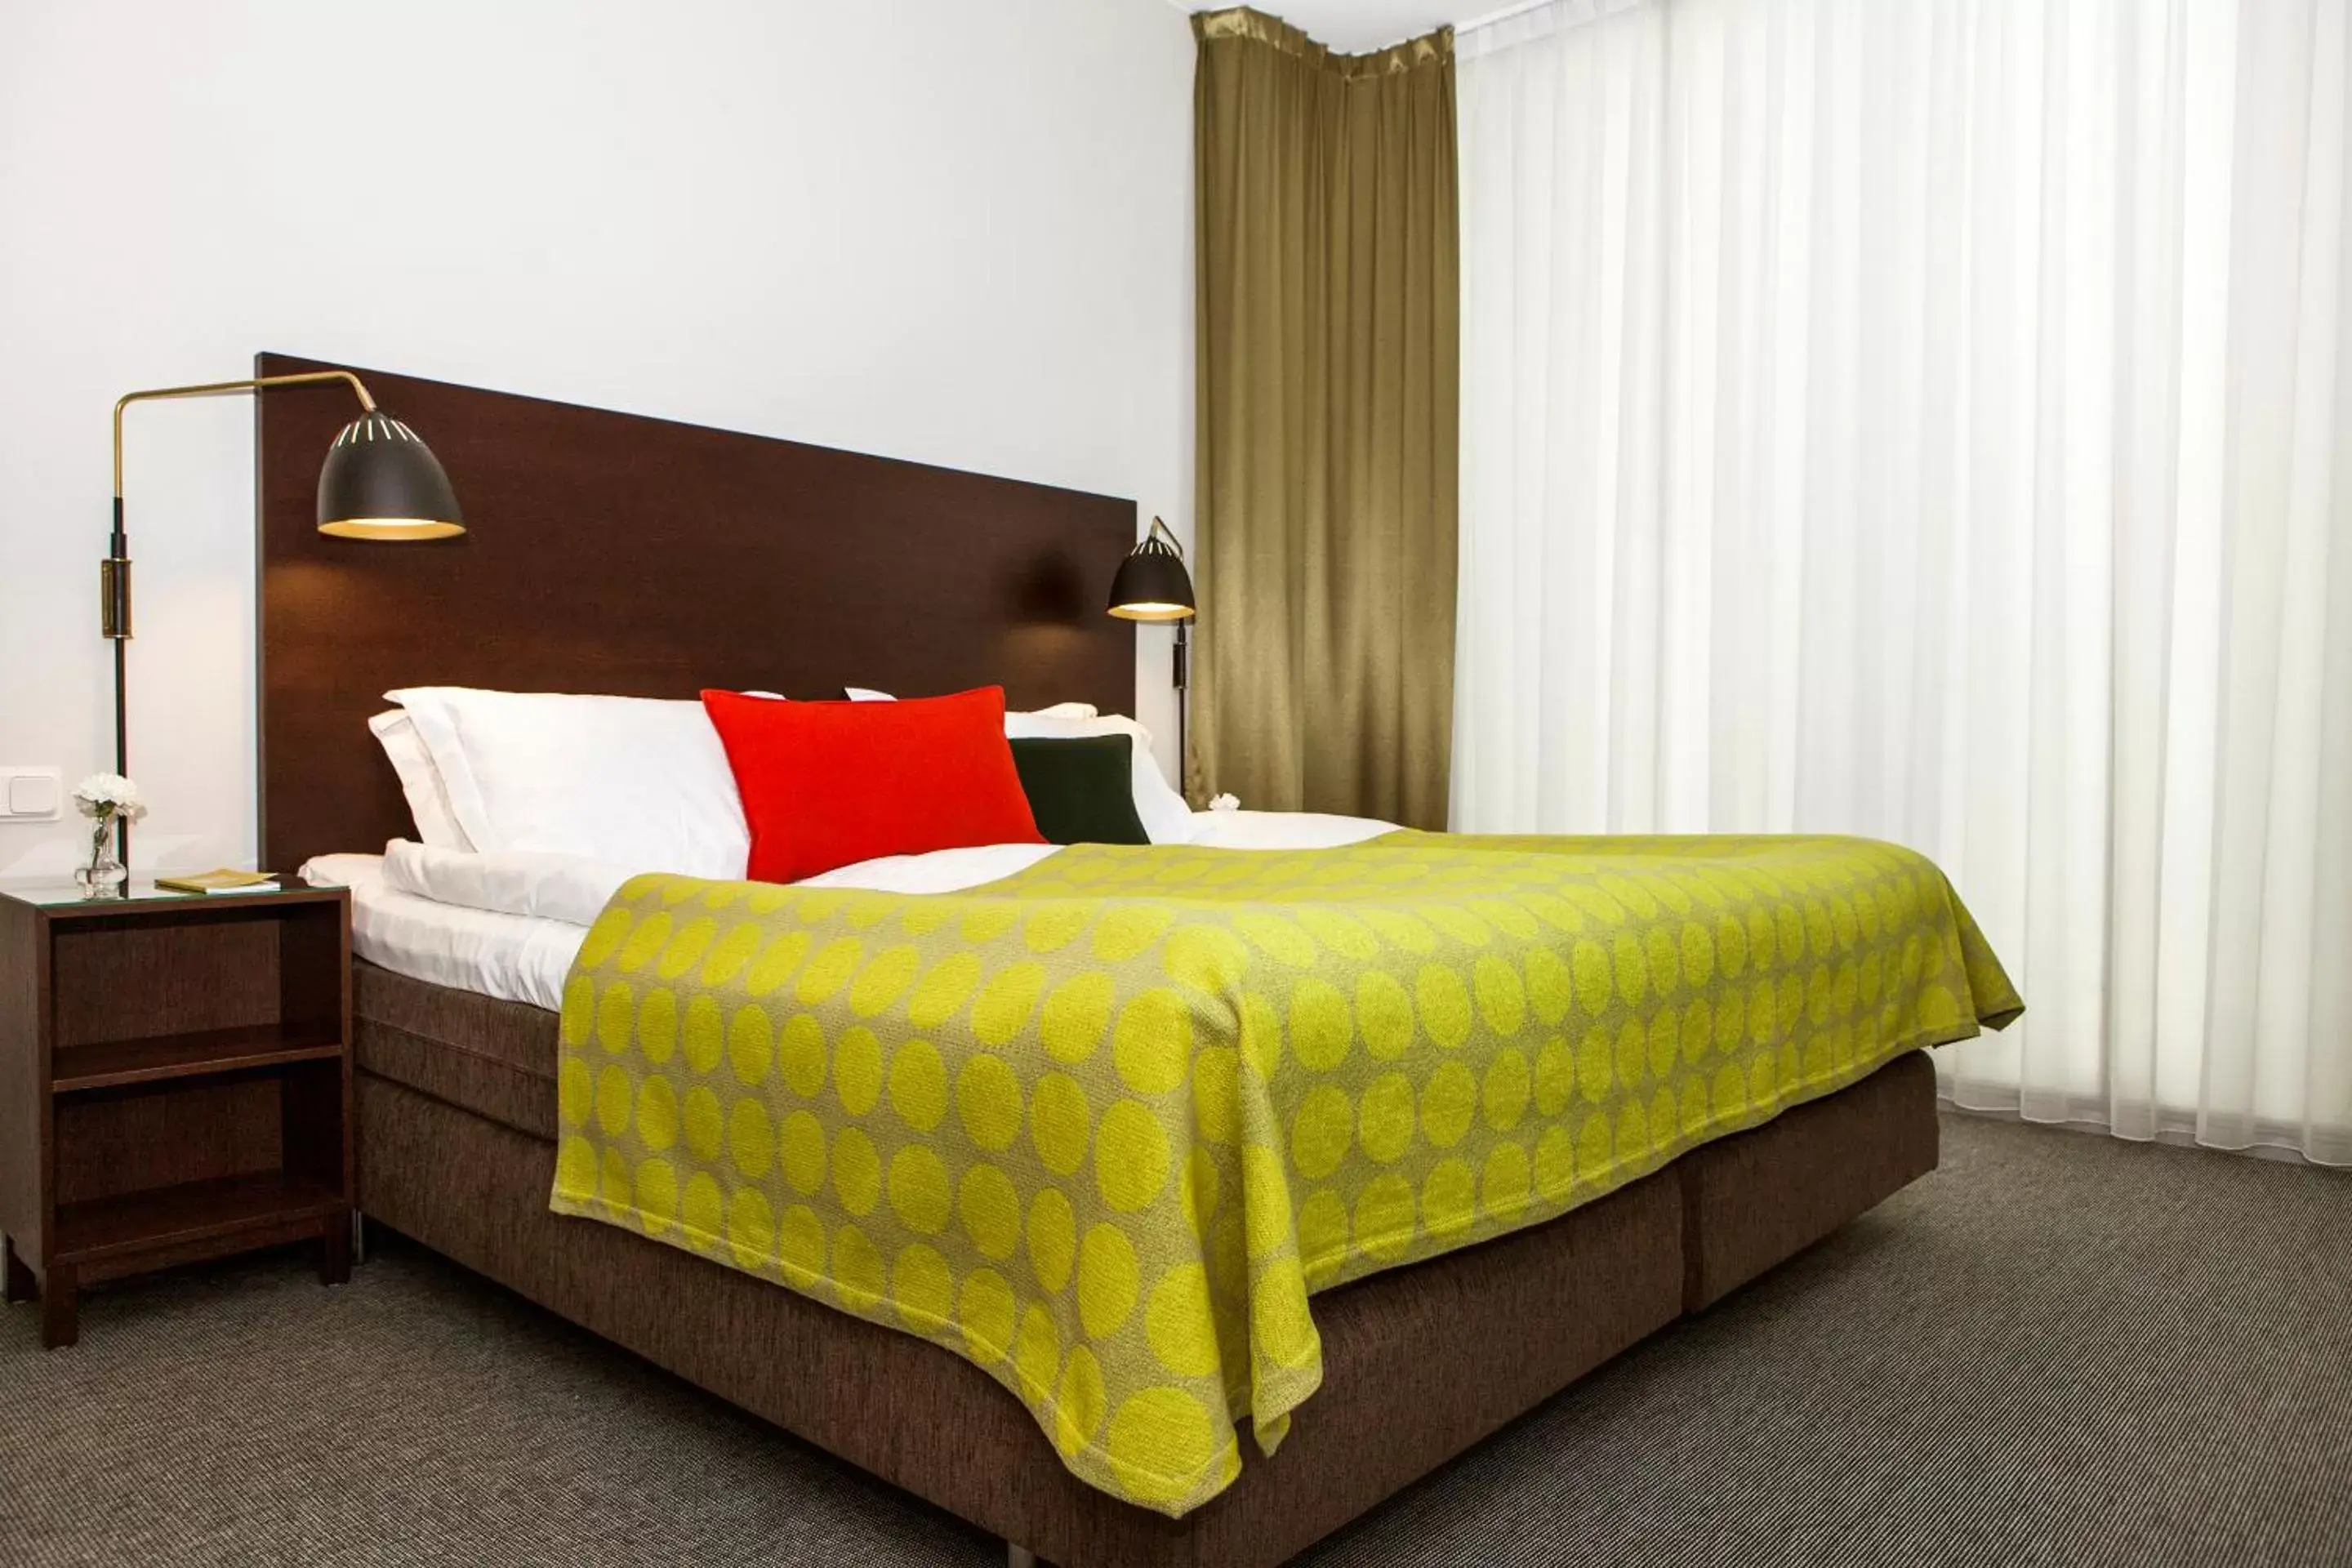 Bed in Elite Hotel Ideon, Lund